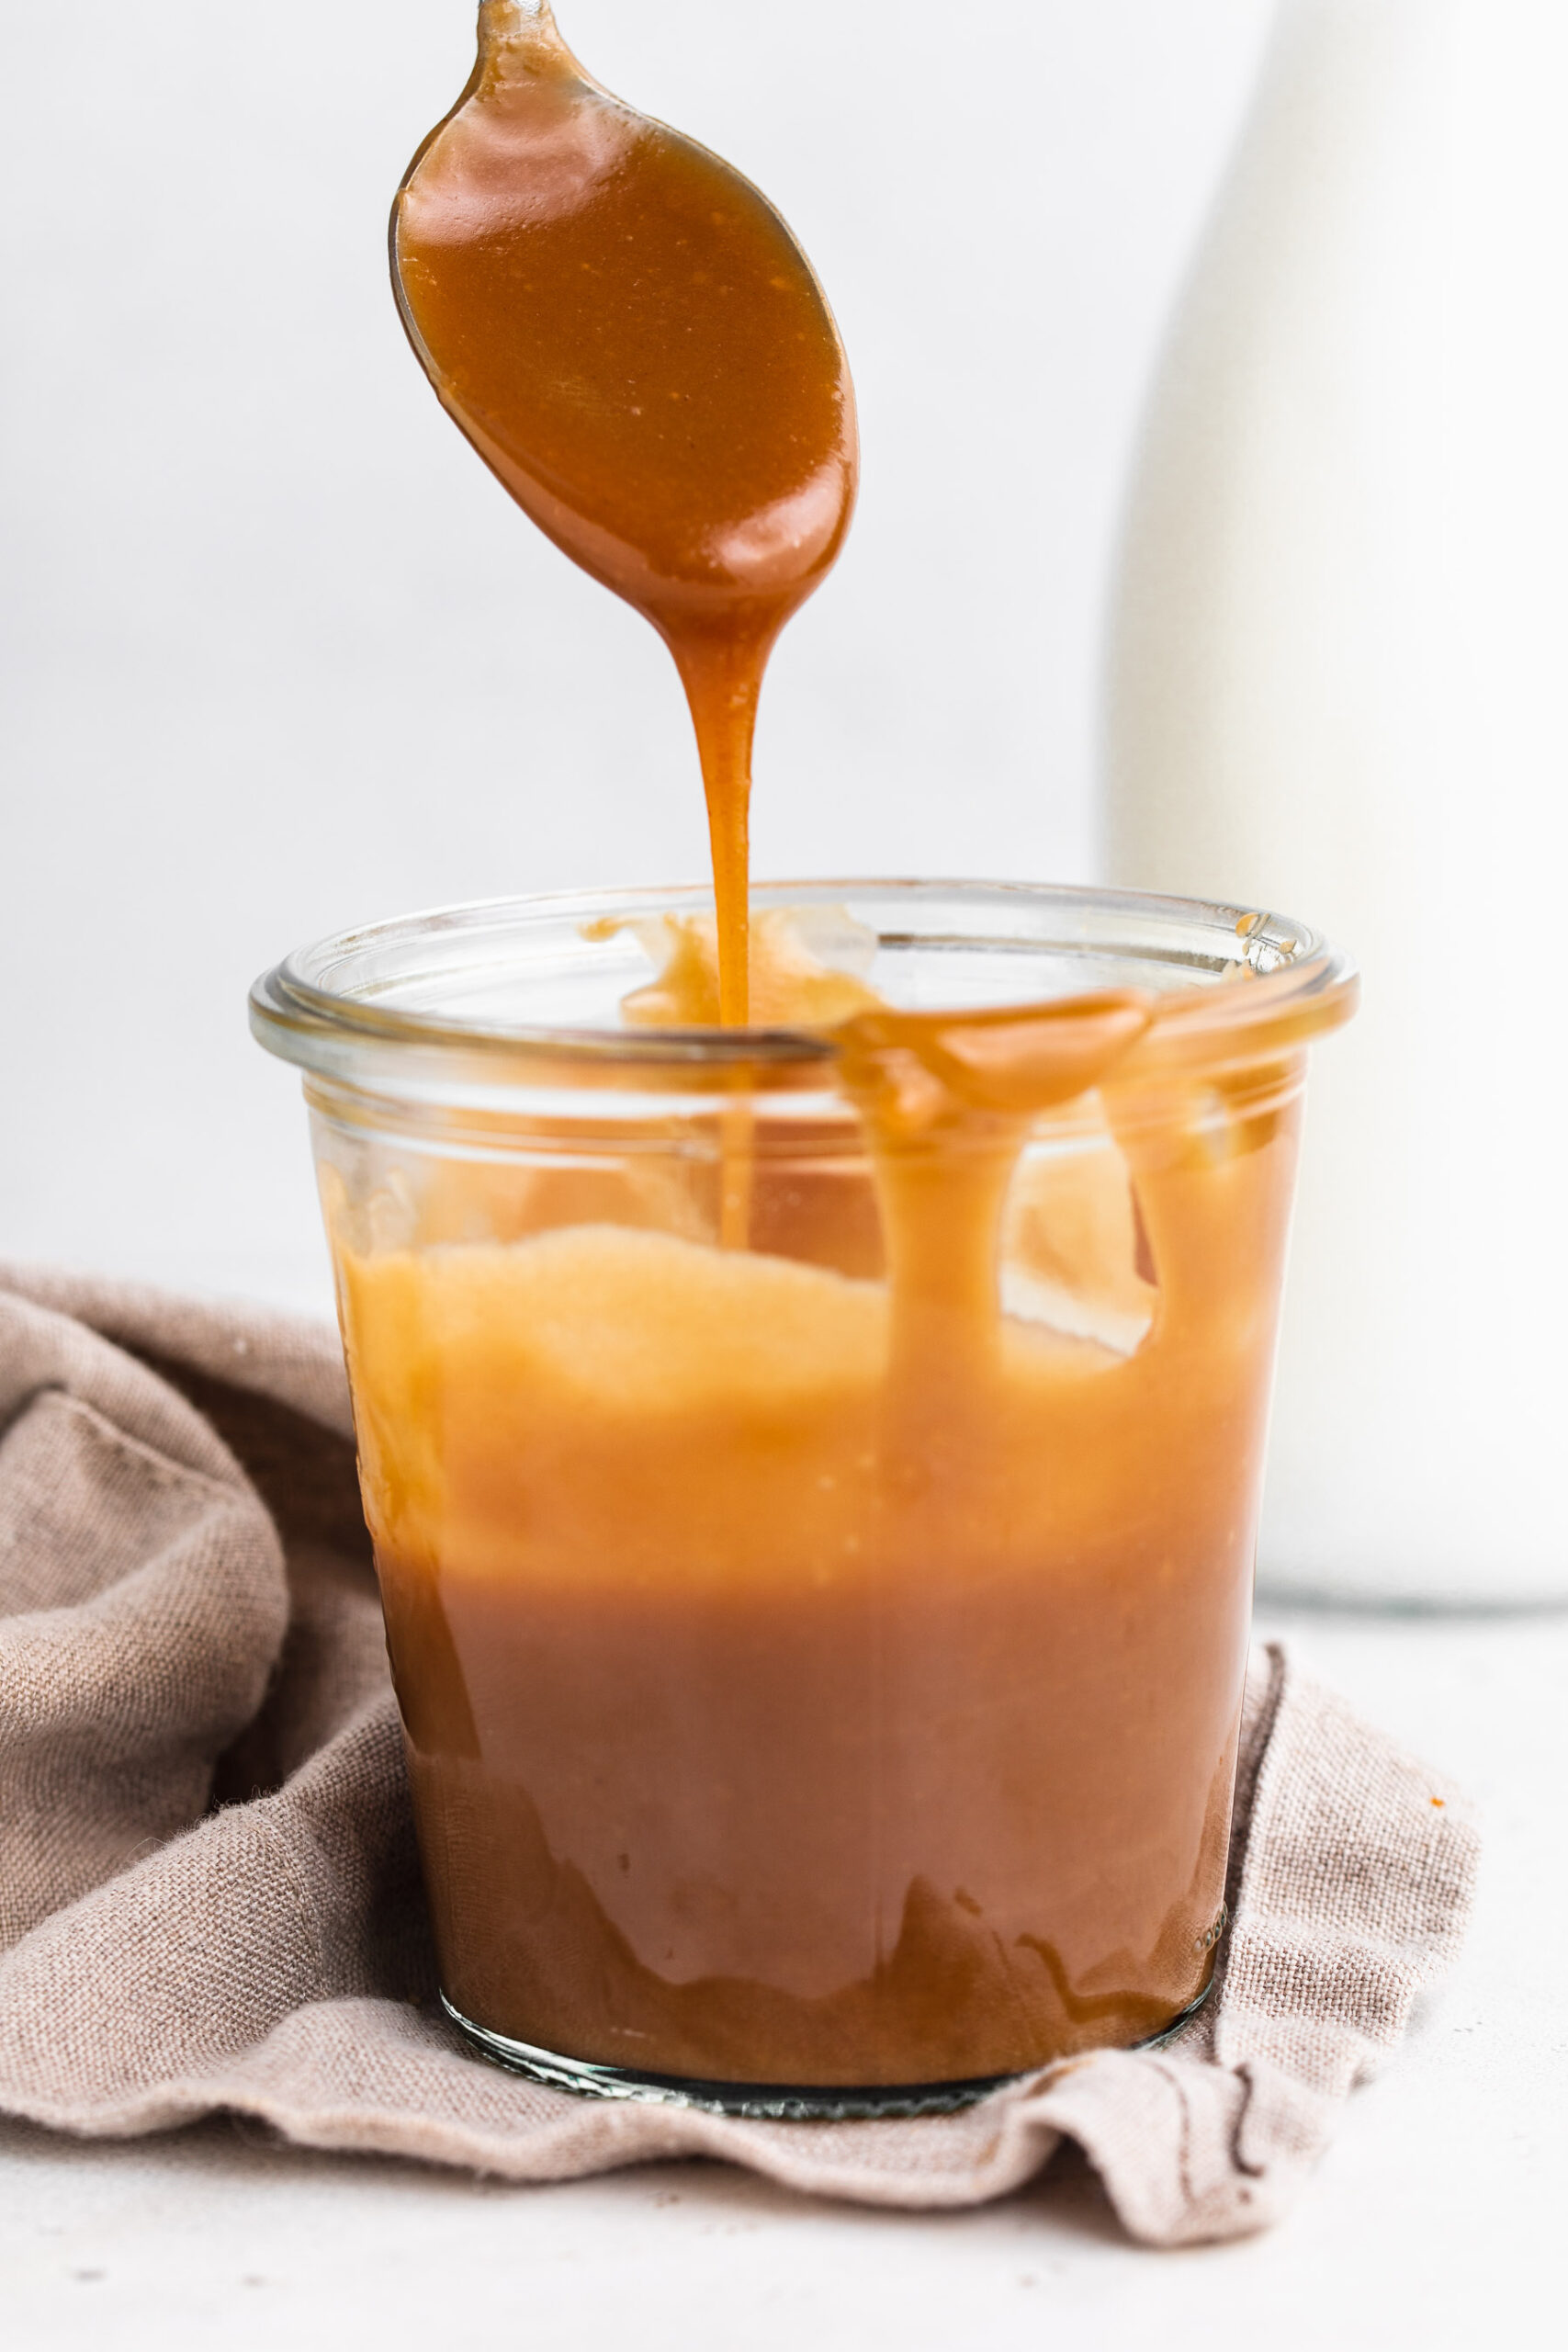 How to Make Caramel Sauce (3 Ingredients!)